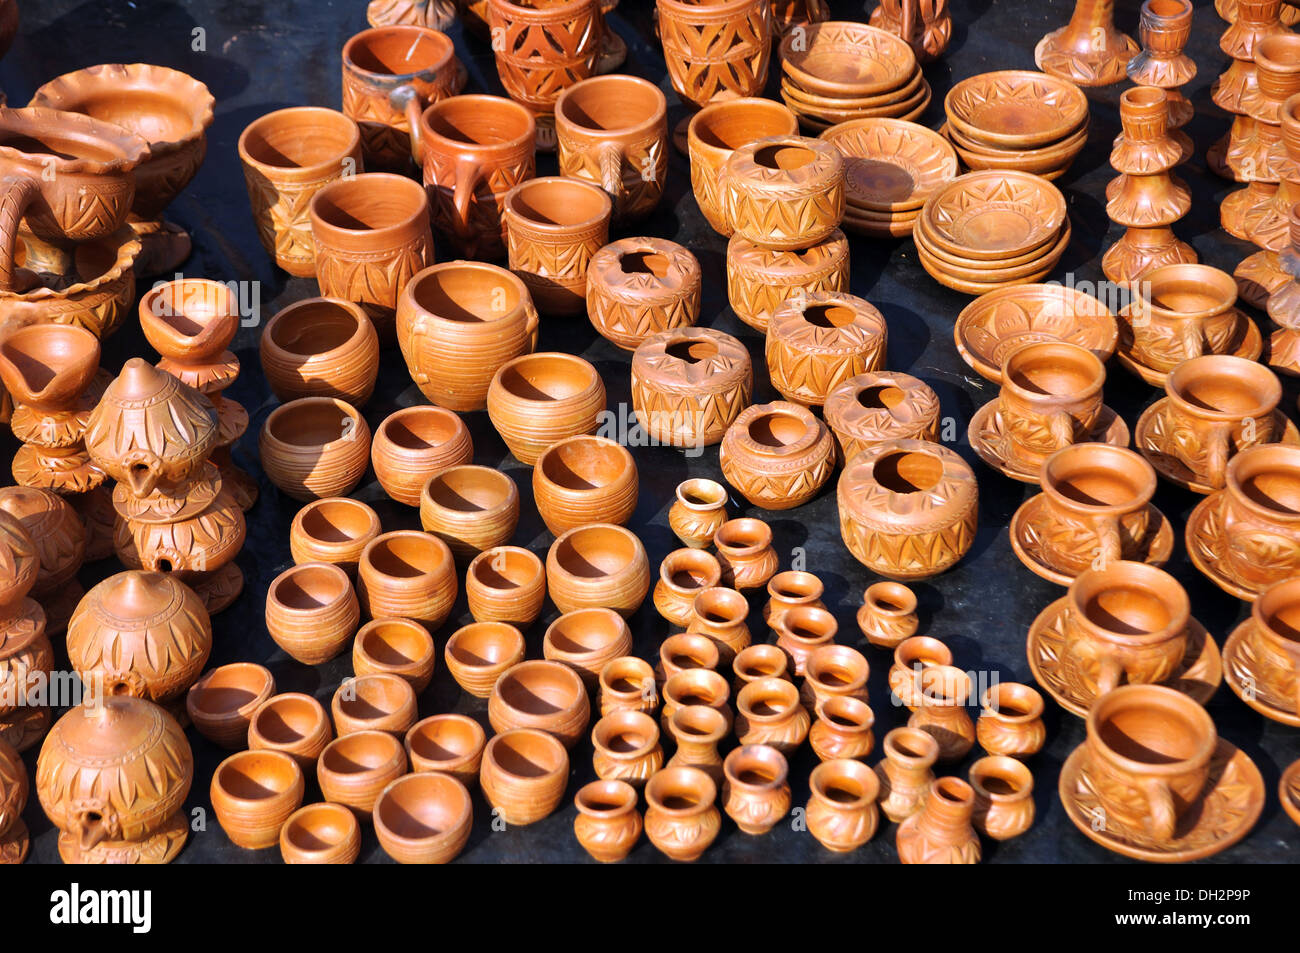 Terre cuite, terre cuite artisanat pots de terre cuite Bengale occidental Inde Asie Banque D'Images